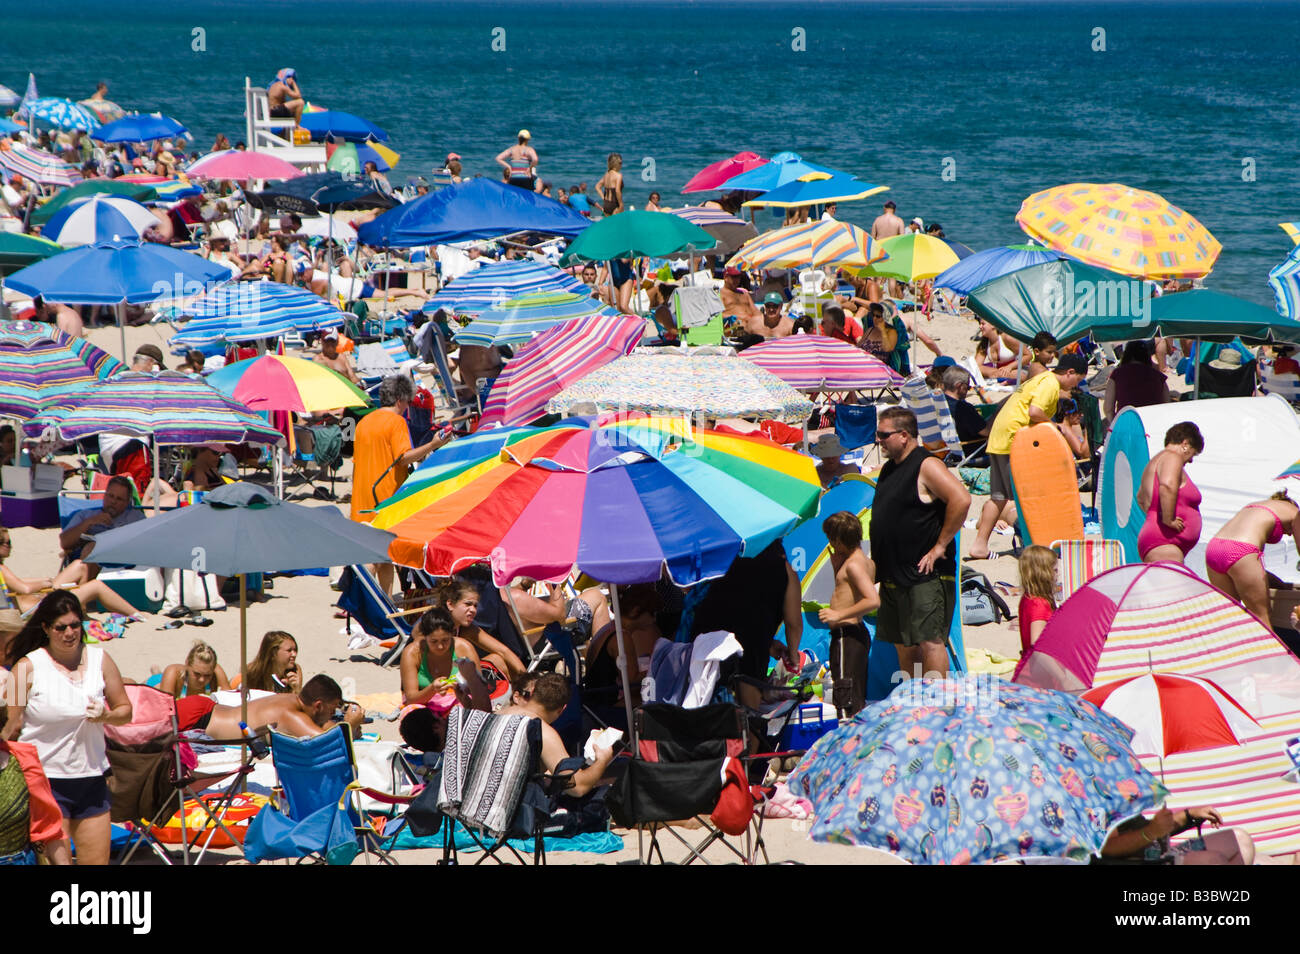 Affollata estate spiaggia con ombrelloni colorati, nauset beach, Cape Cod National Seashore, cape cod, ma Foto Stock